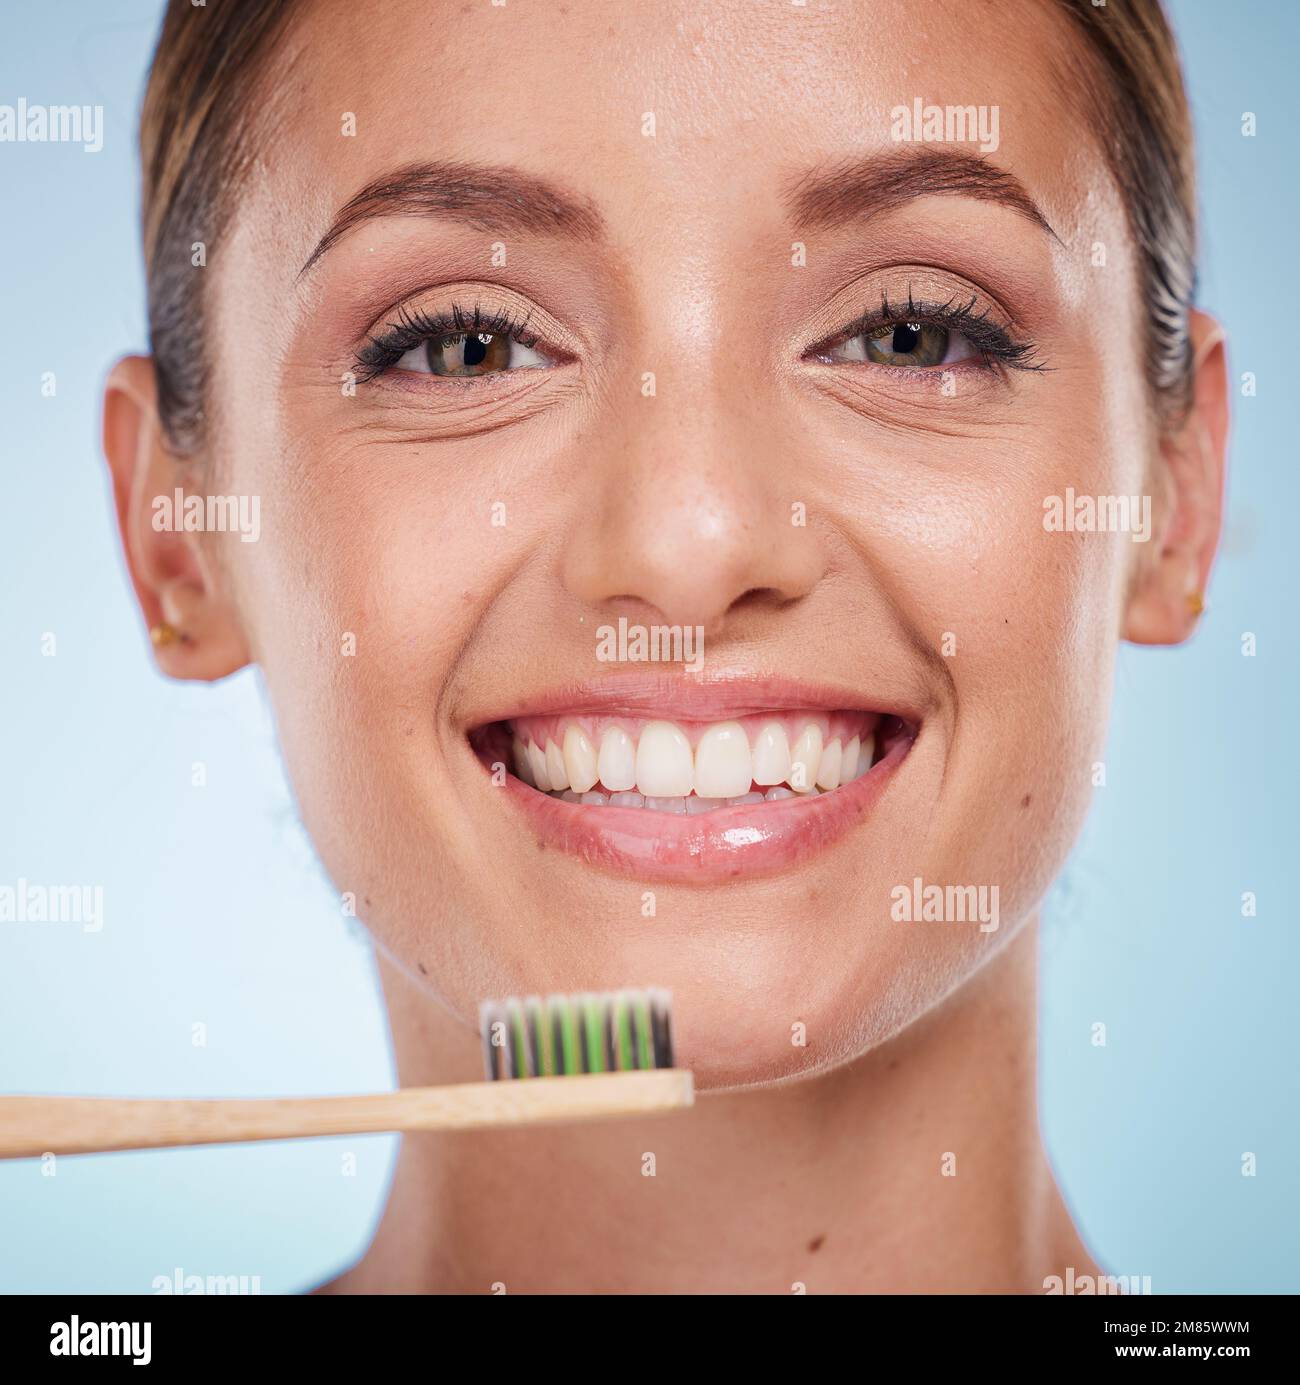 Denti spazzolanti, dentali e donne con spazzolino per denti sbiancanti e di bellezza, salute orale e respiro fresco con sfondo studio. Bocca benessere Foto Stock